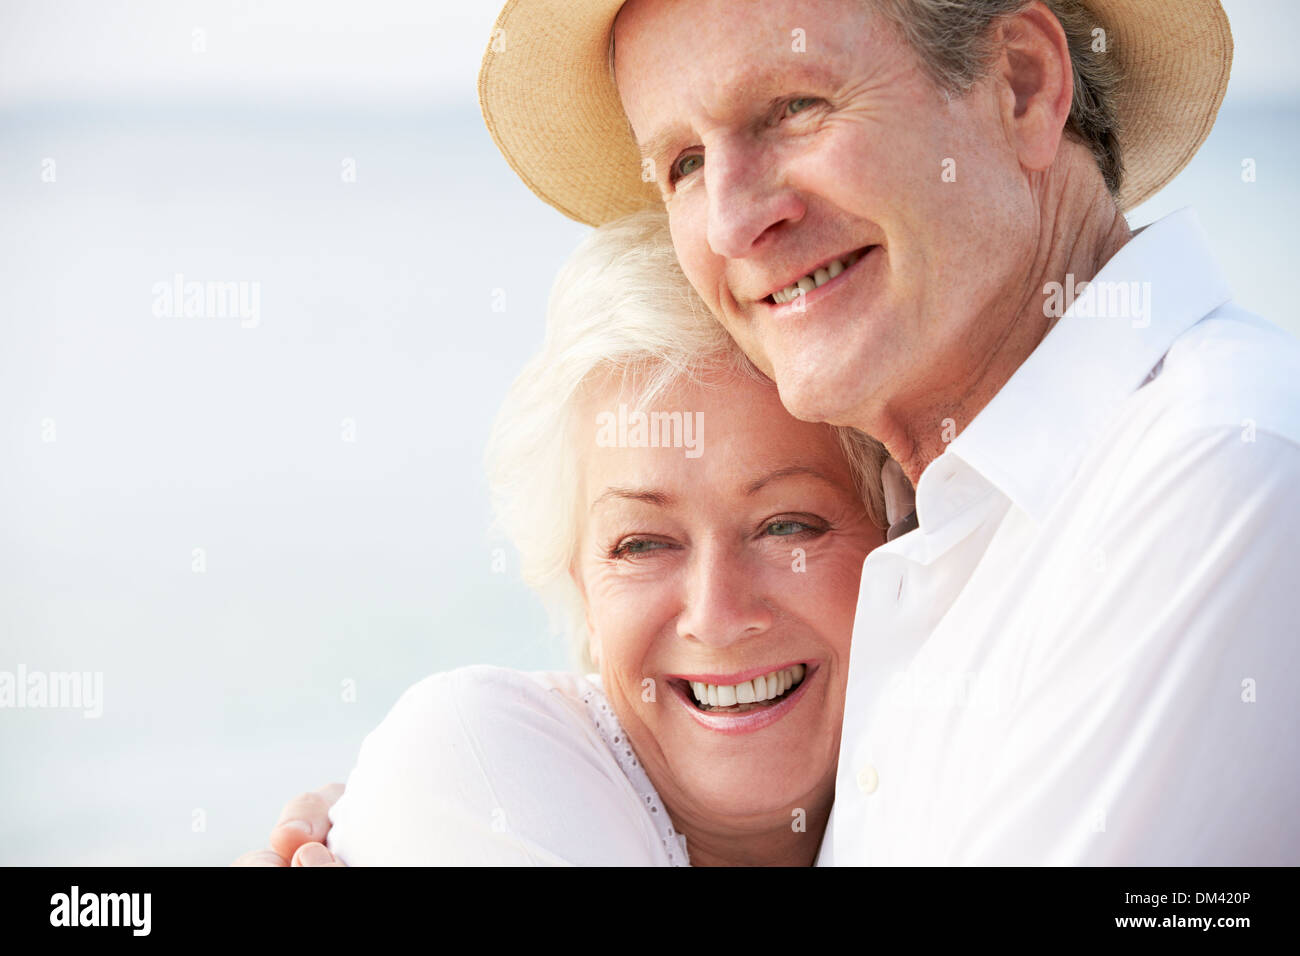 Romantic Couple On Tropical Beach Appartement De Vacances Banque D'Images